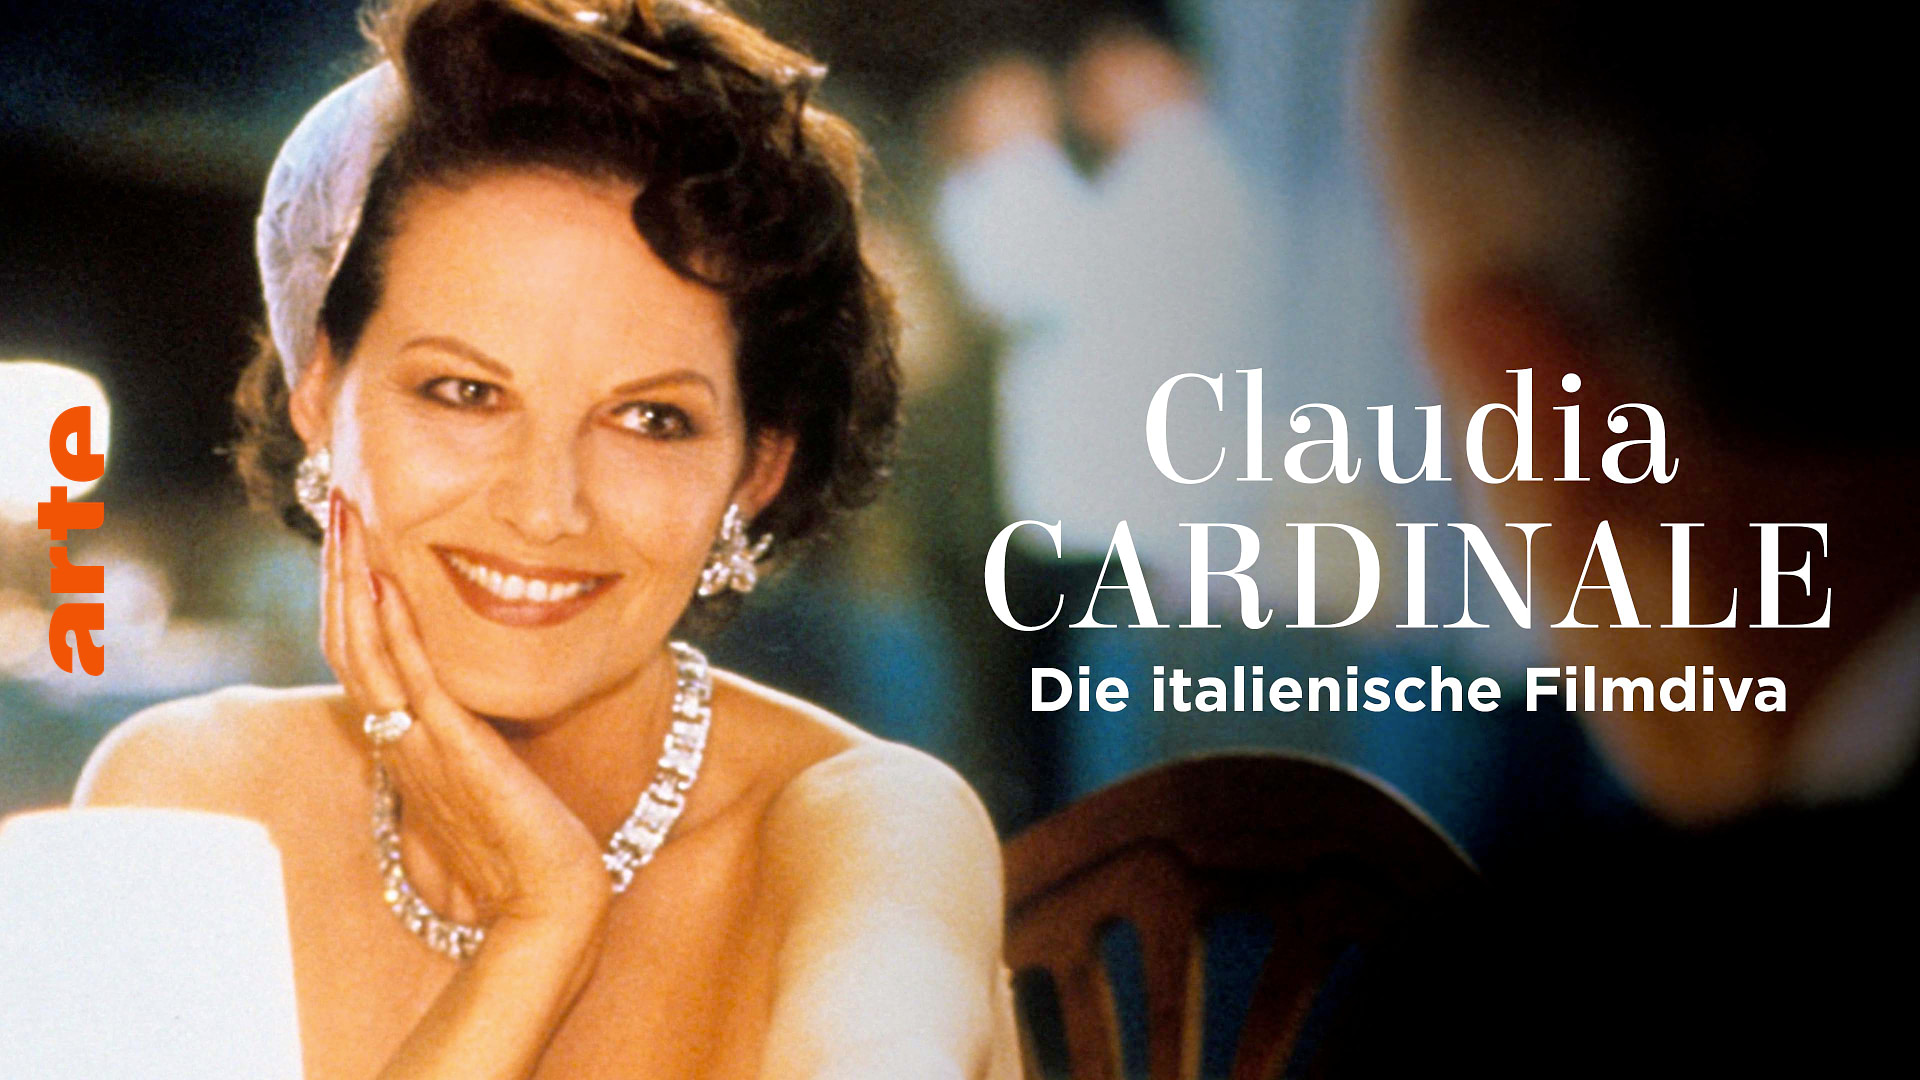 Claudia Cardinale, die italienische Filmdiva